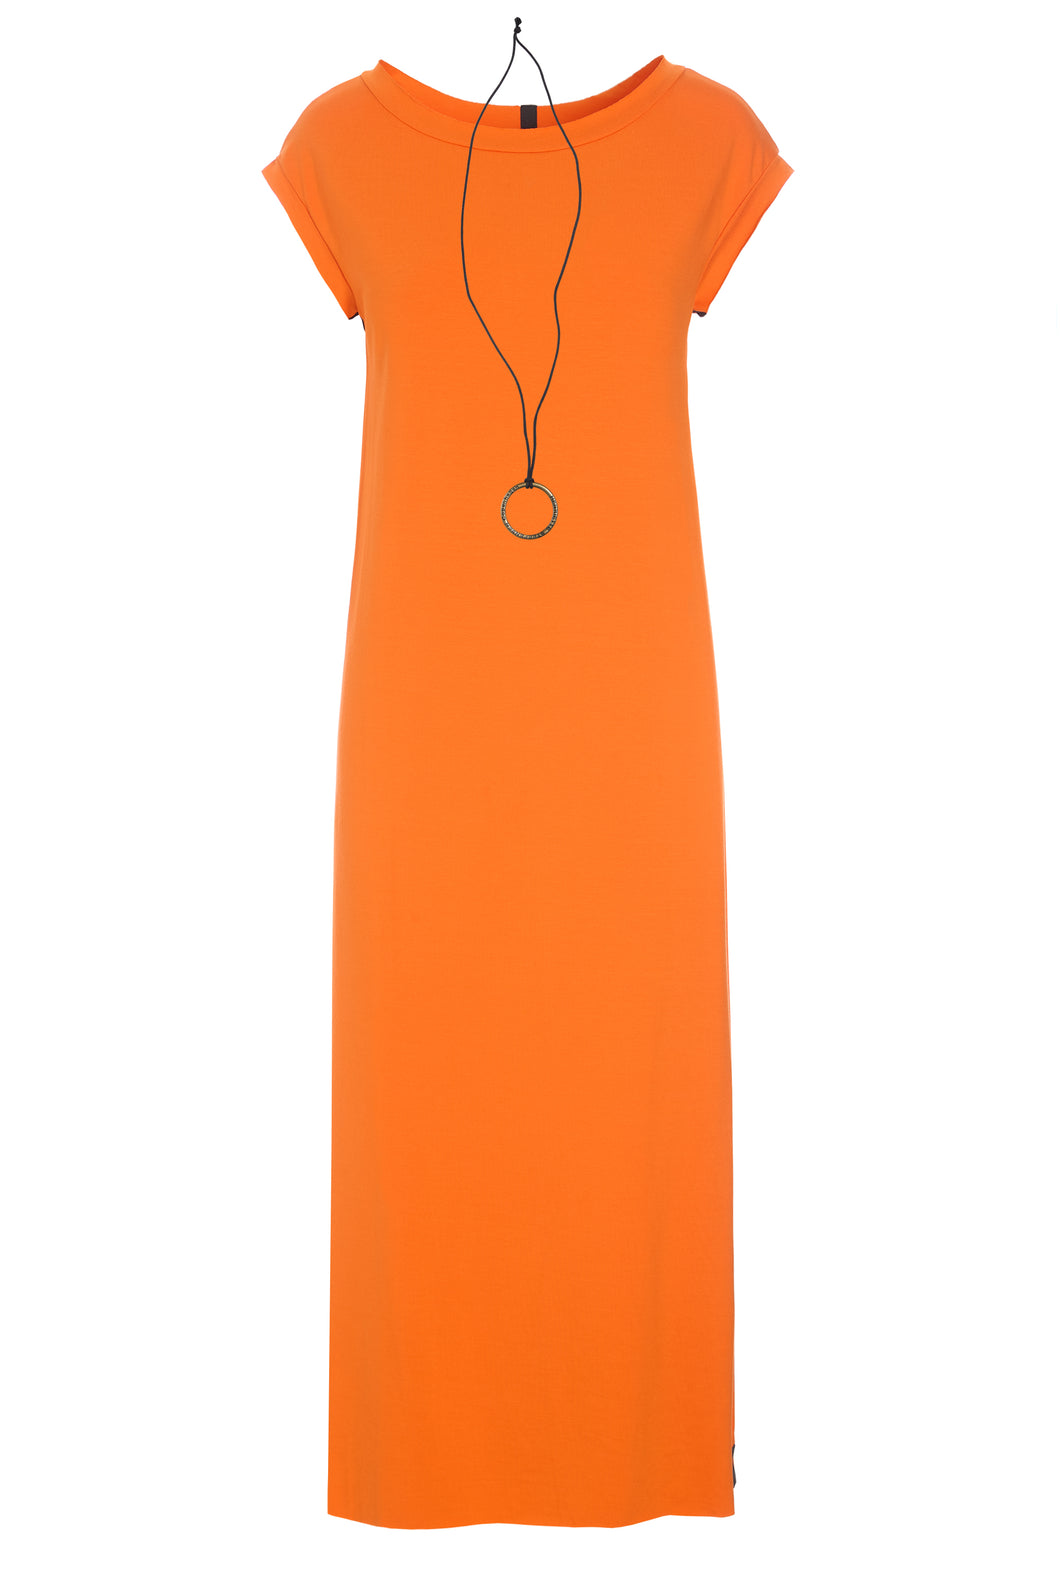 HENRIETTE STEFFENSEN Jersey Dress with necklace (98055)